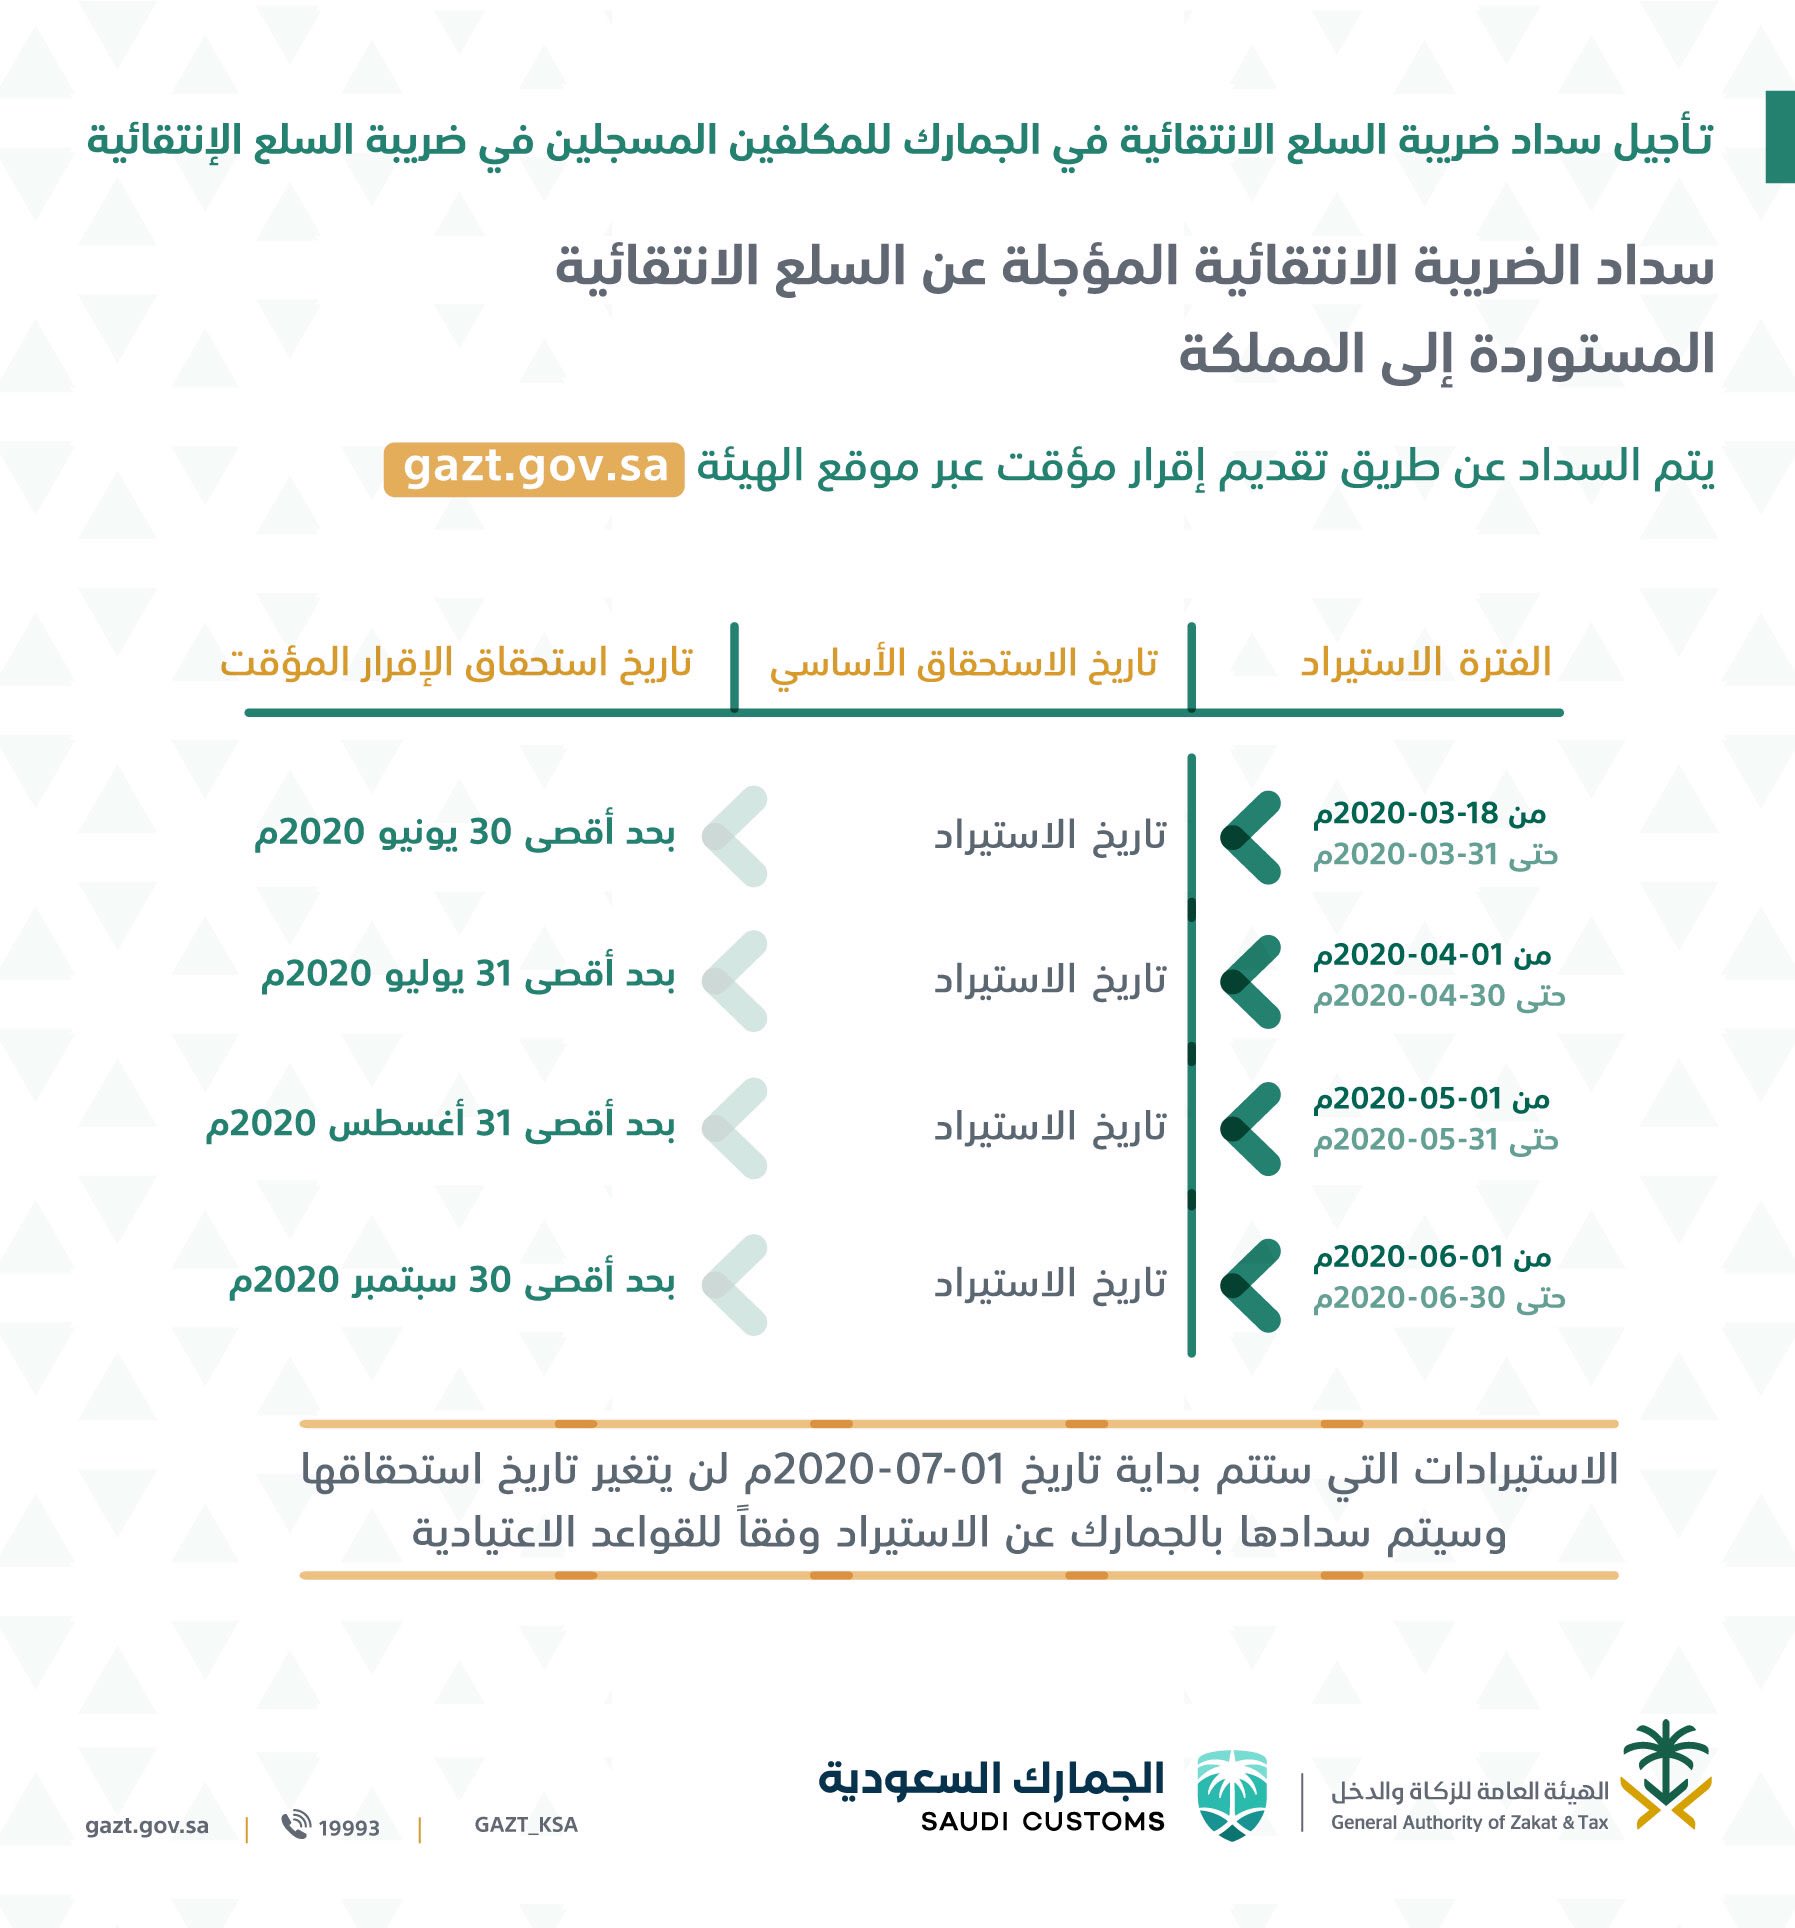 السعودية هيئة الزكاة تقدم حزمة تسهيلات لدعم الاقتصاد والقطاع الخاص معلومات مباشر